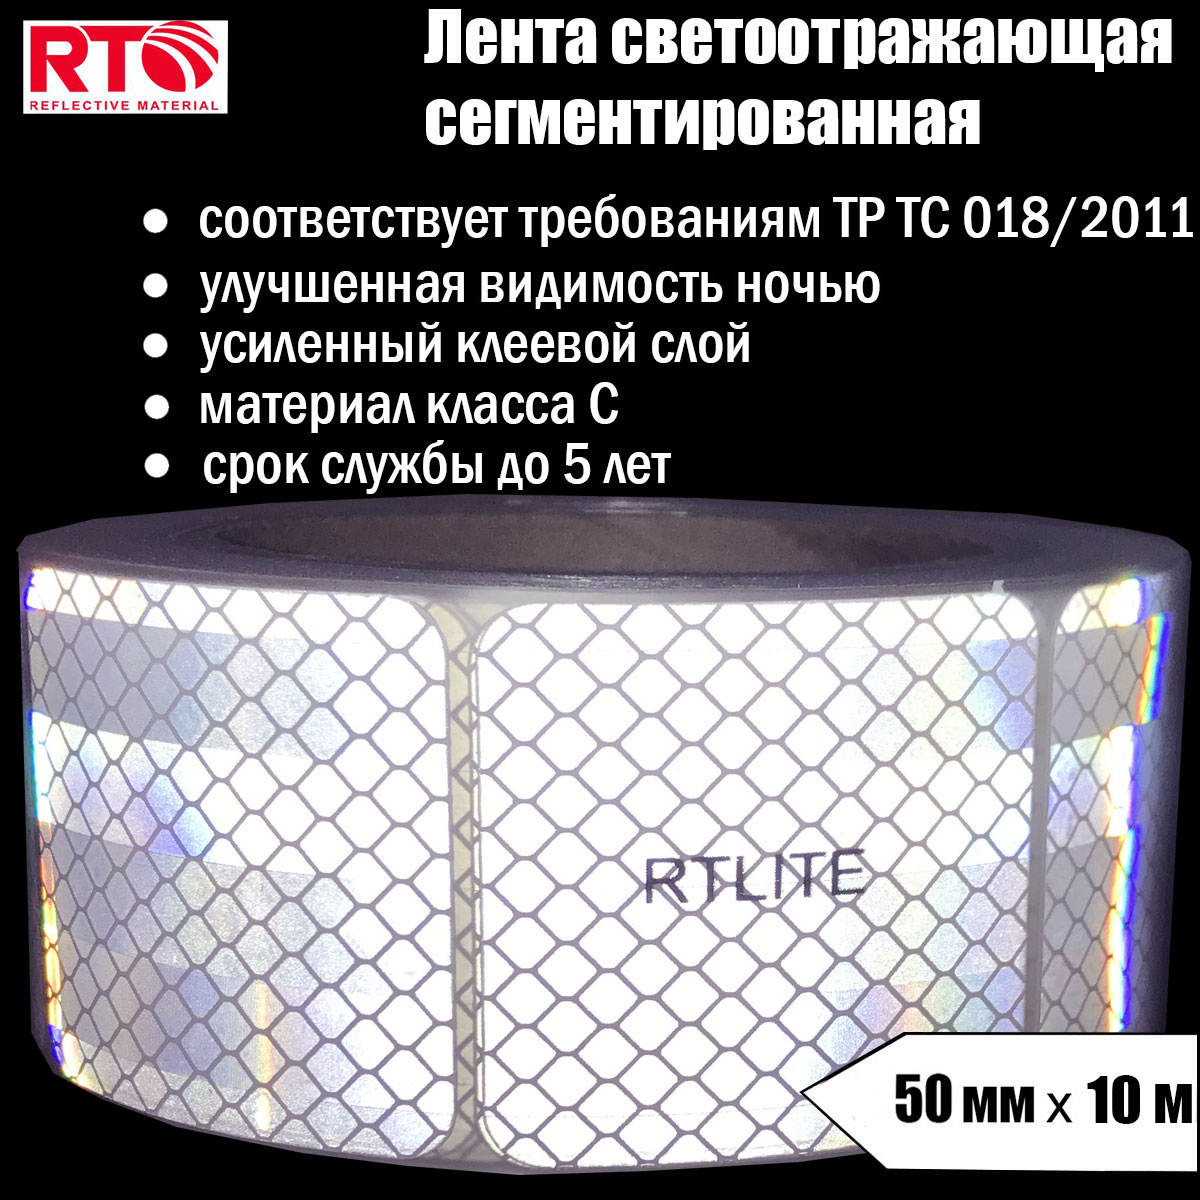 Лента светоотражающая сегментированная RTLITE RT-V104 для контурной маркировки, 50мм х 10м лента светоотражающая сегментированная rtlite rt v104 для контурной маркировки 50мм х 5м